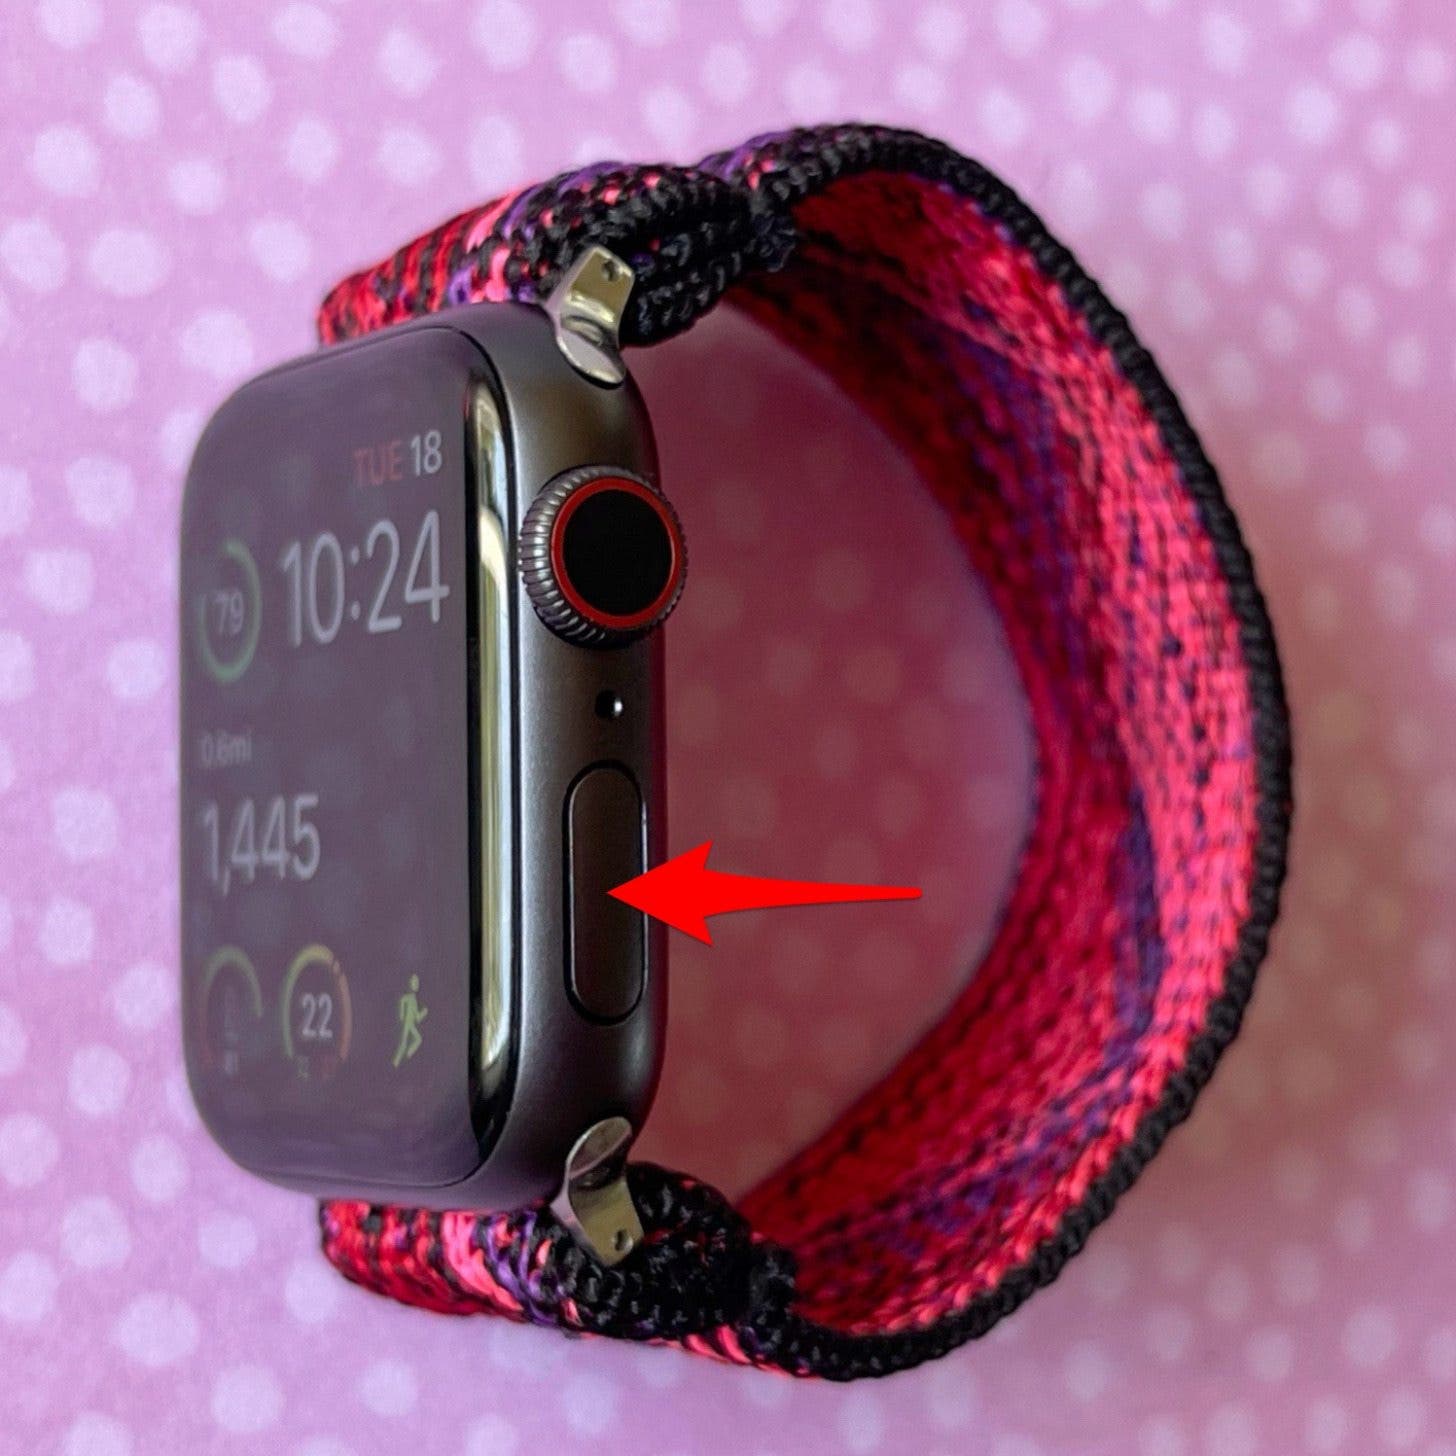 Haz doble clic en el botón lateral del Apple Watch.